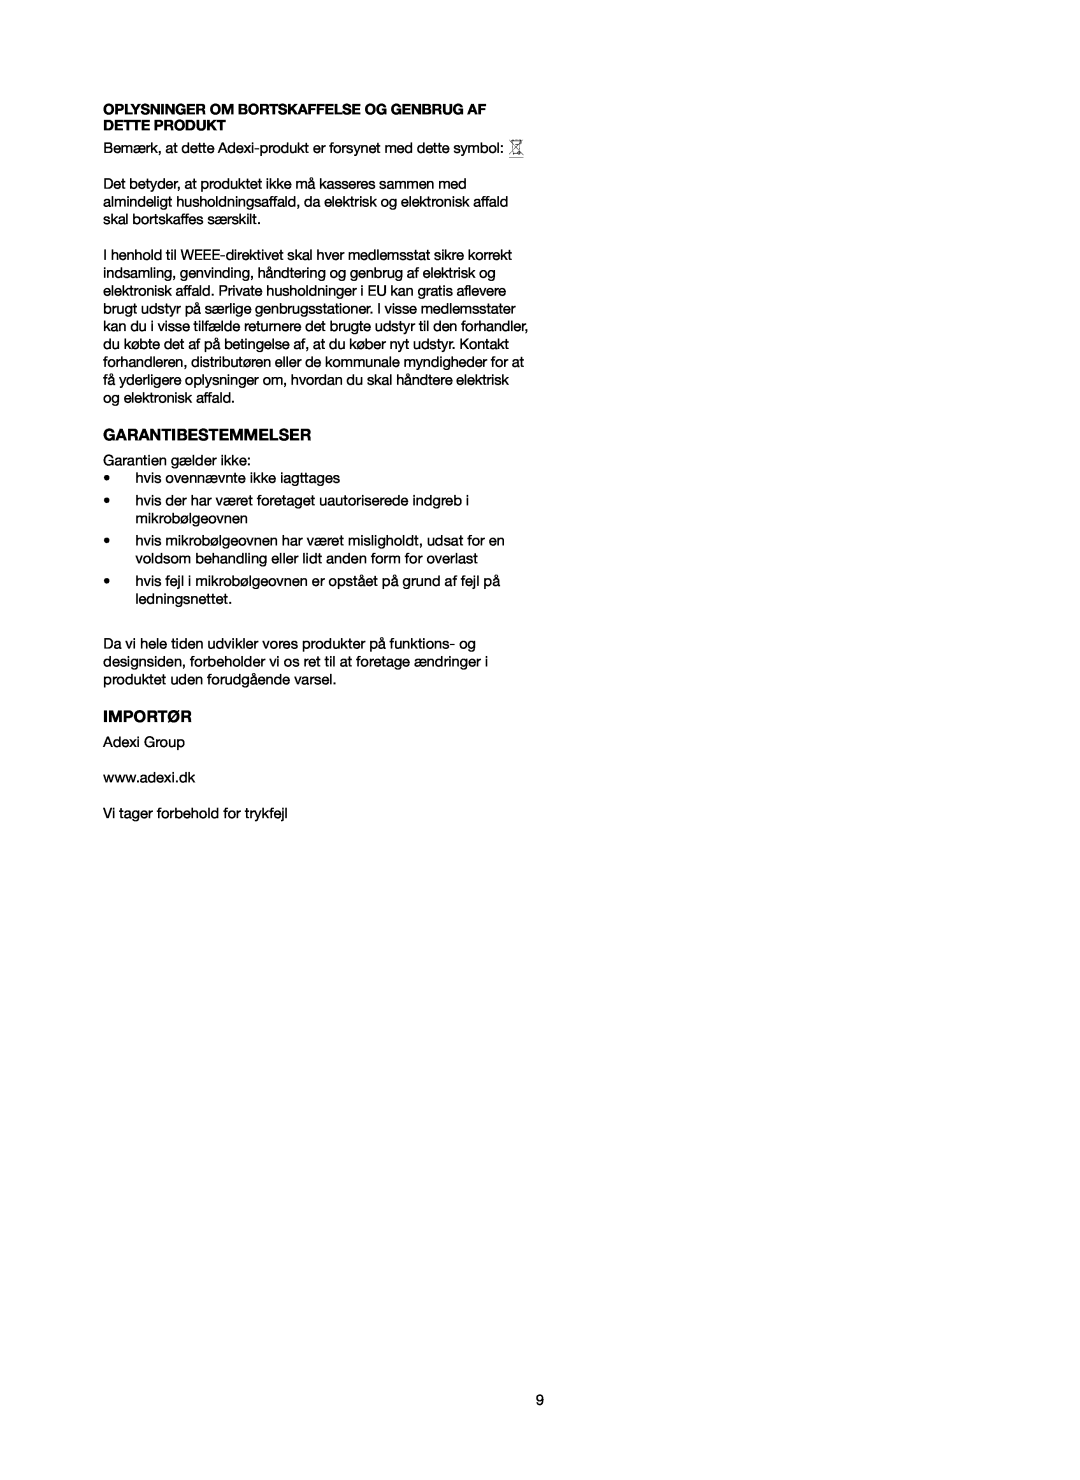 Melissa 753-097 manual Garantibestemmelser, Importør, Oplysninger Om Bortskaffelse Og Genbrug Af Dette Produkt 